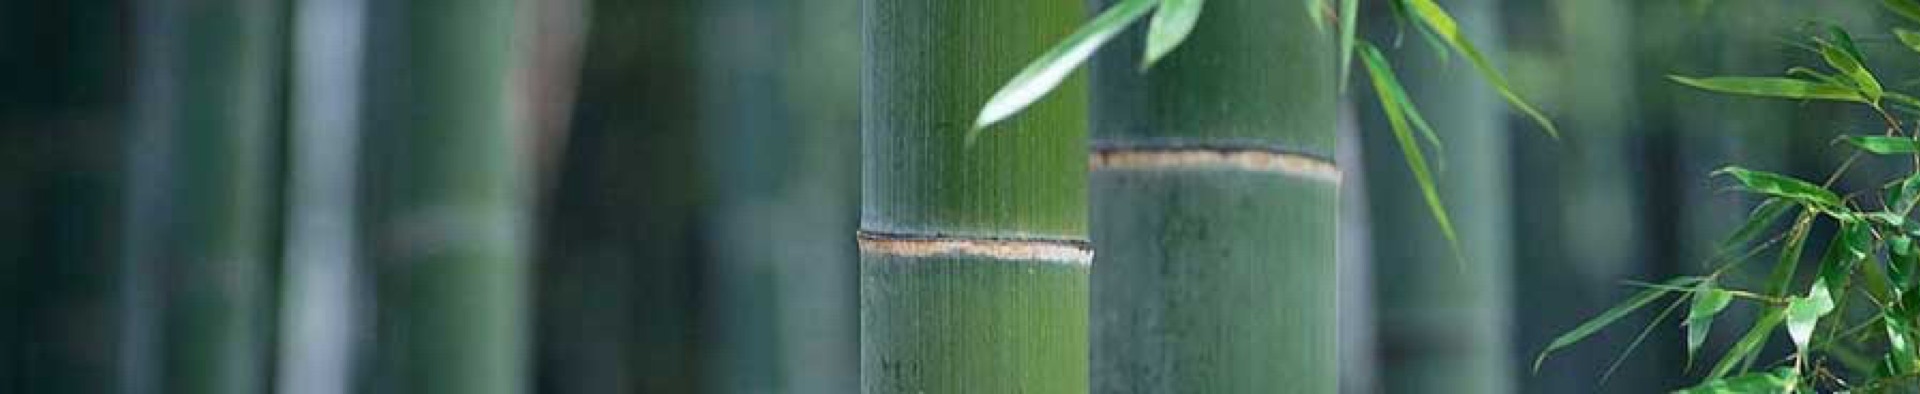 Taikiken green bamboo top banner